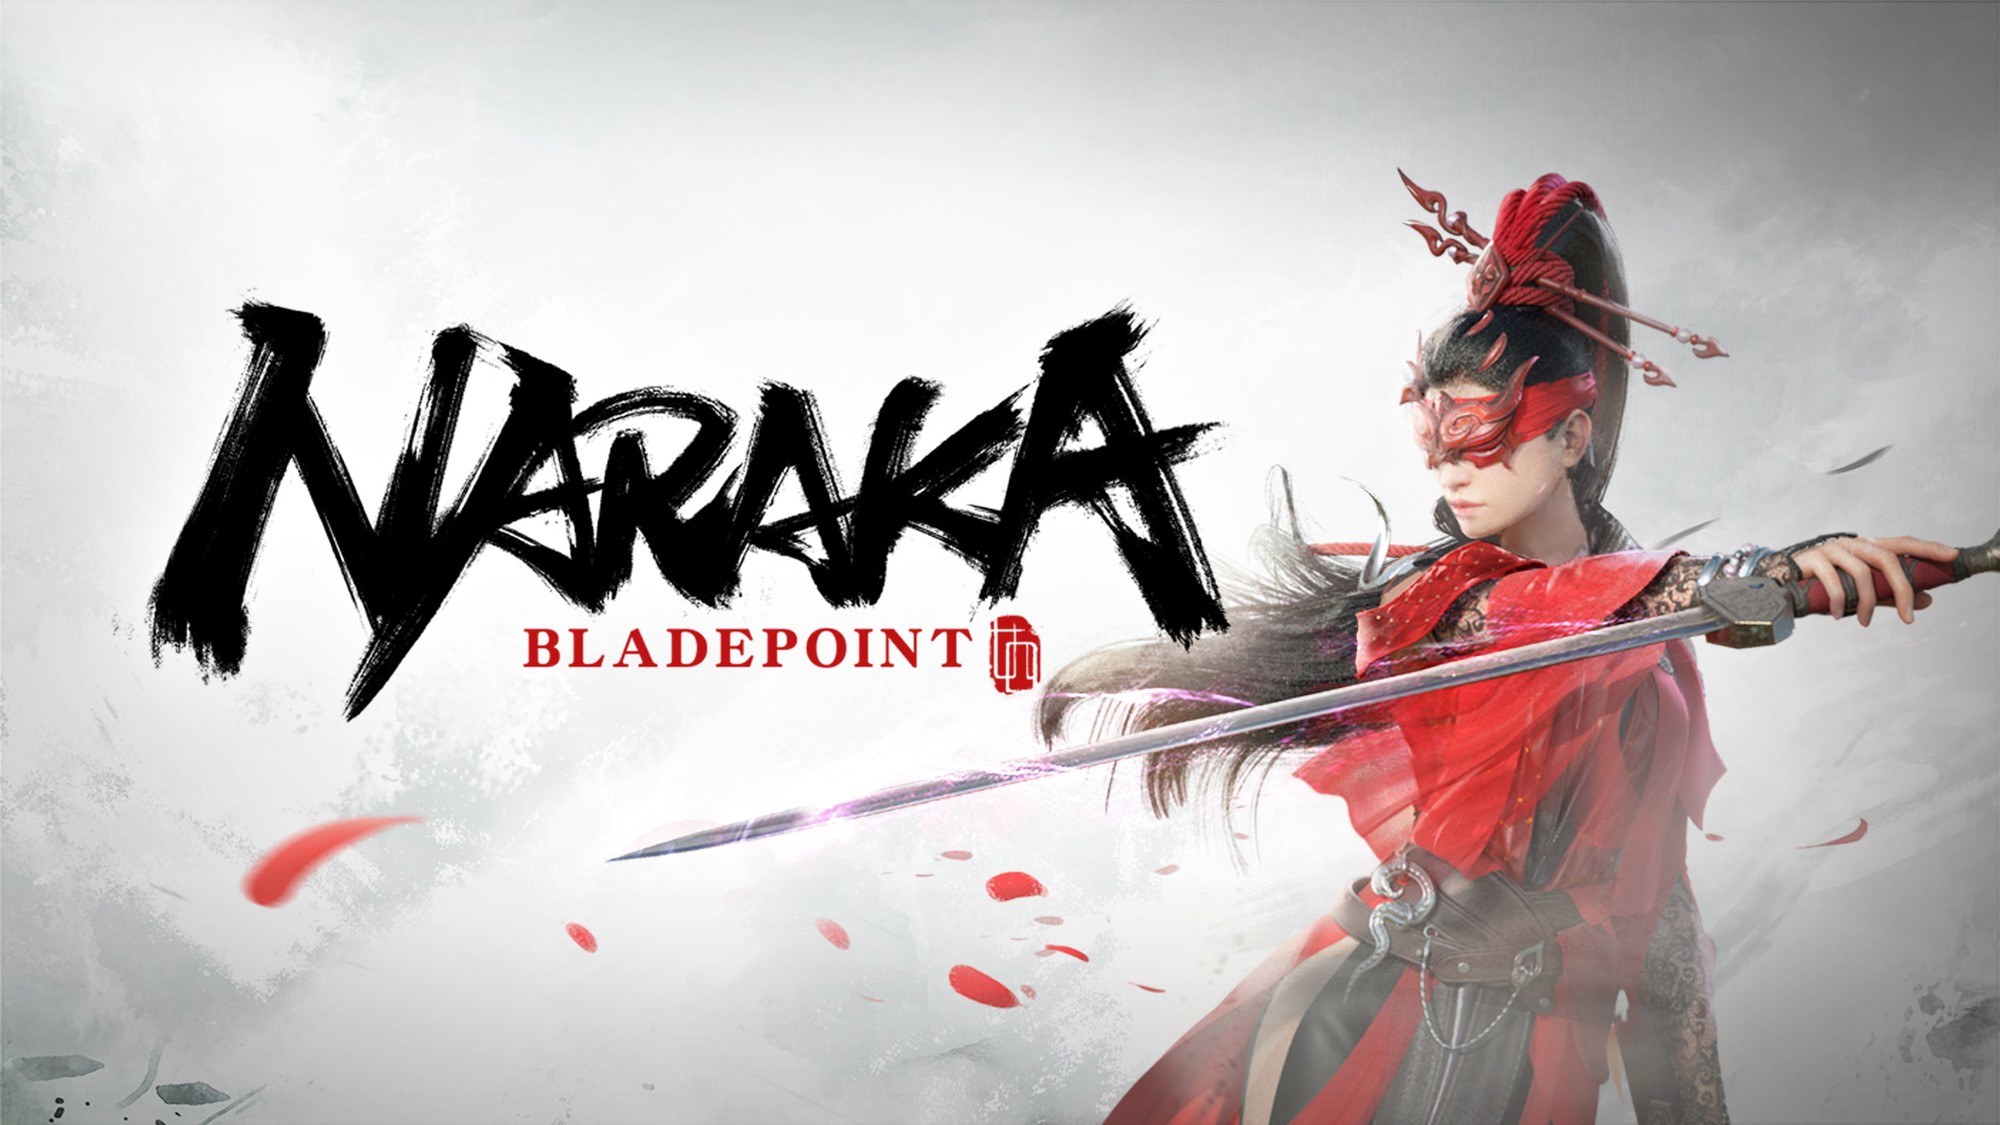 Tổ chức Esports nổi tiếng ra mắt đội tuyển Naraka Bladepoint, khẳng định mục tiêu trở thành team chuyên nghiệp bậc nhất - Ảnh 1.